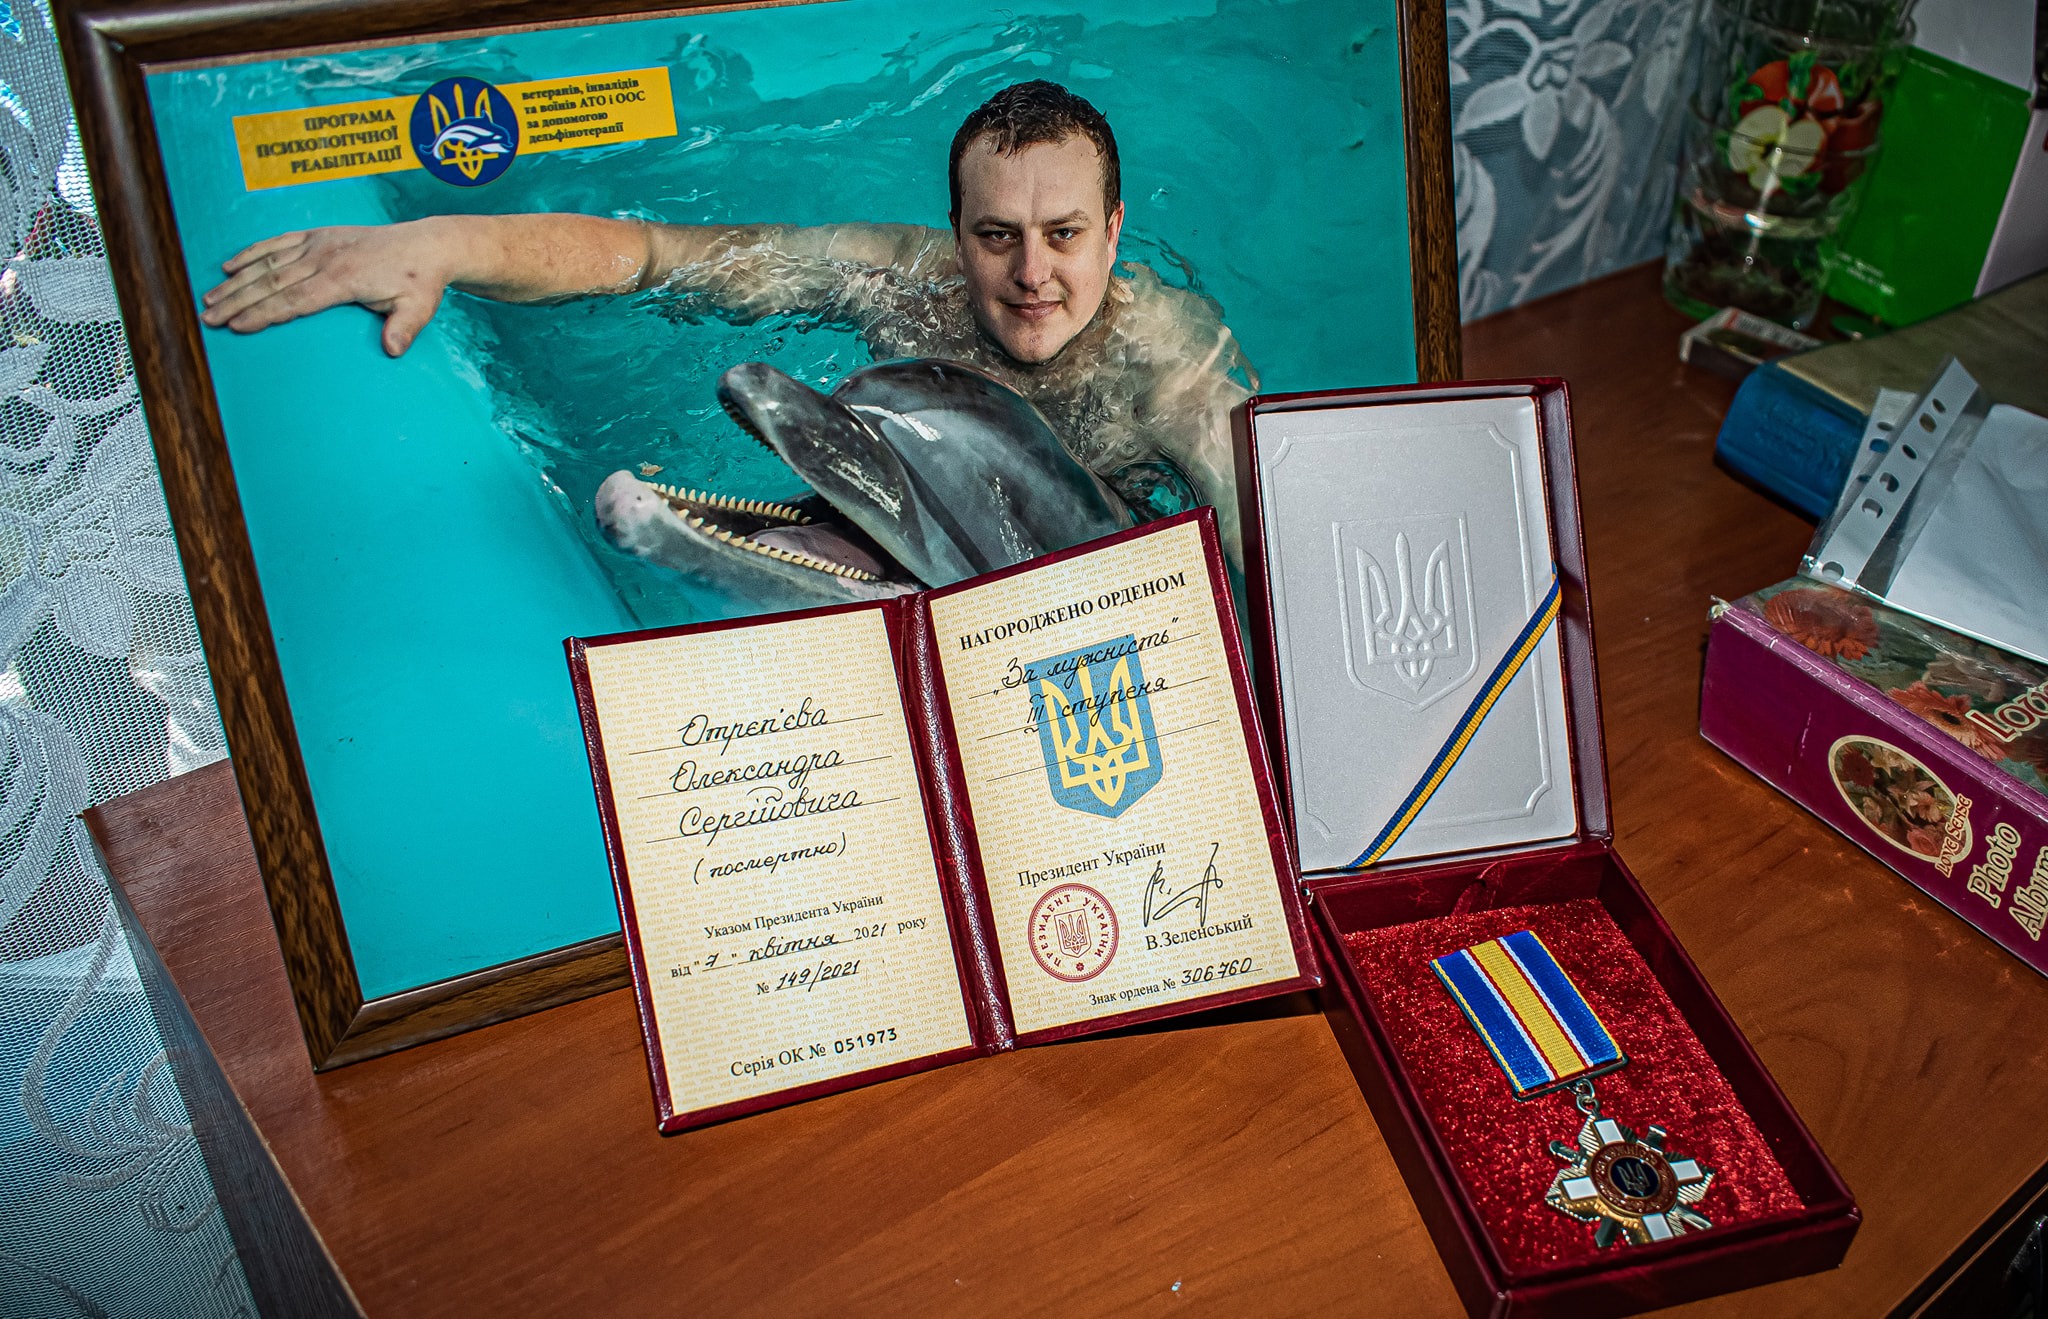 старший матрос Отреп'єв Олександр Сергійович отримав орден «За мужність» ІІІ ступеня (посмертно)